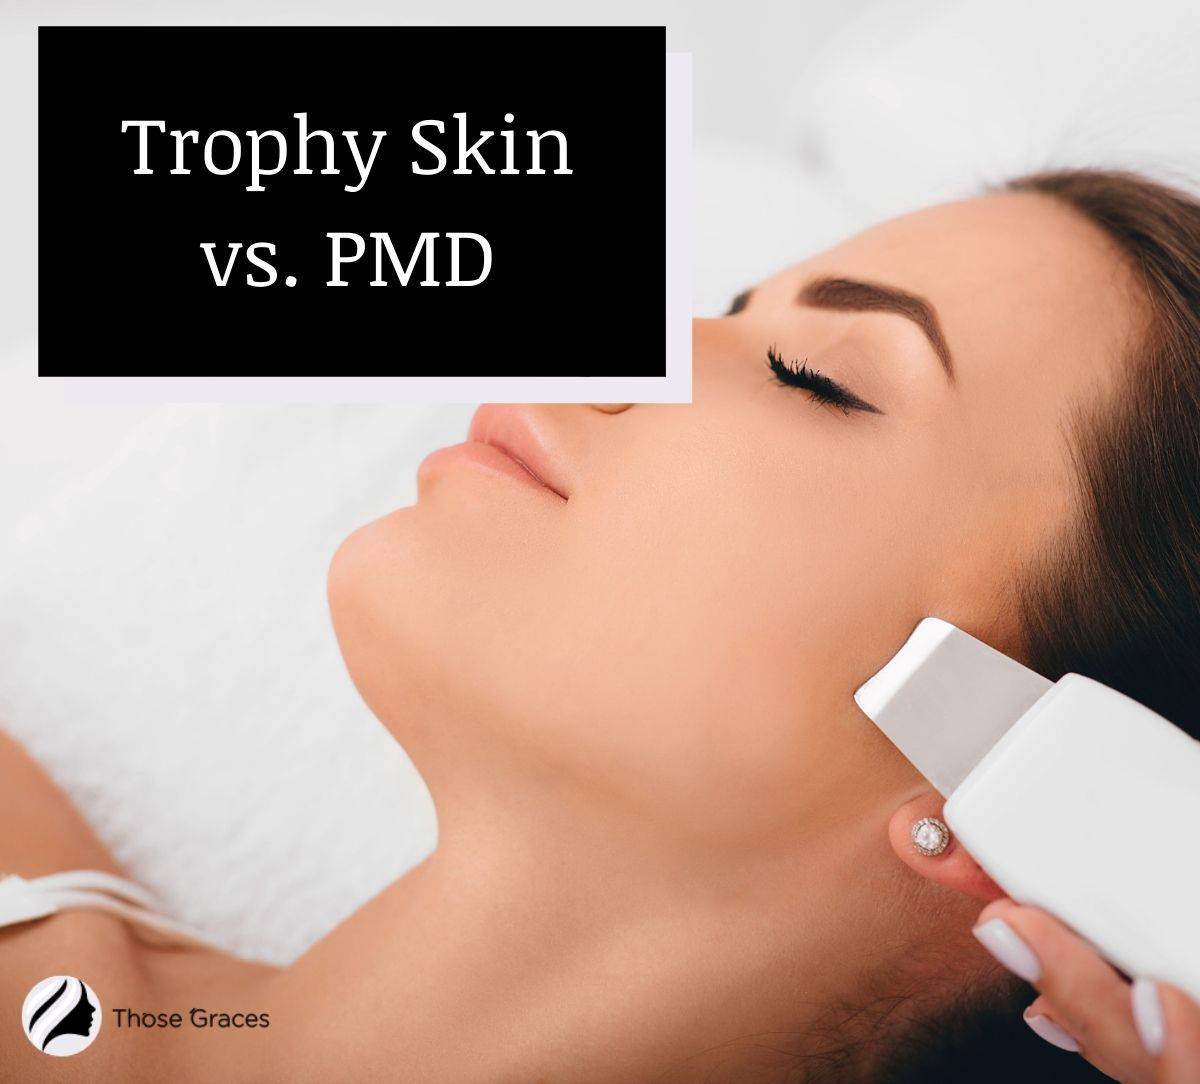 Trophy Skin vs. PMD